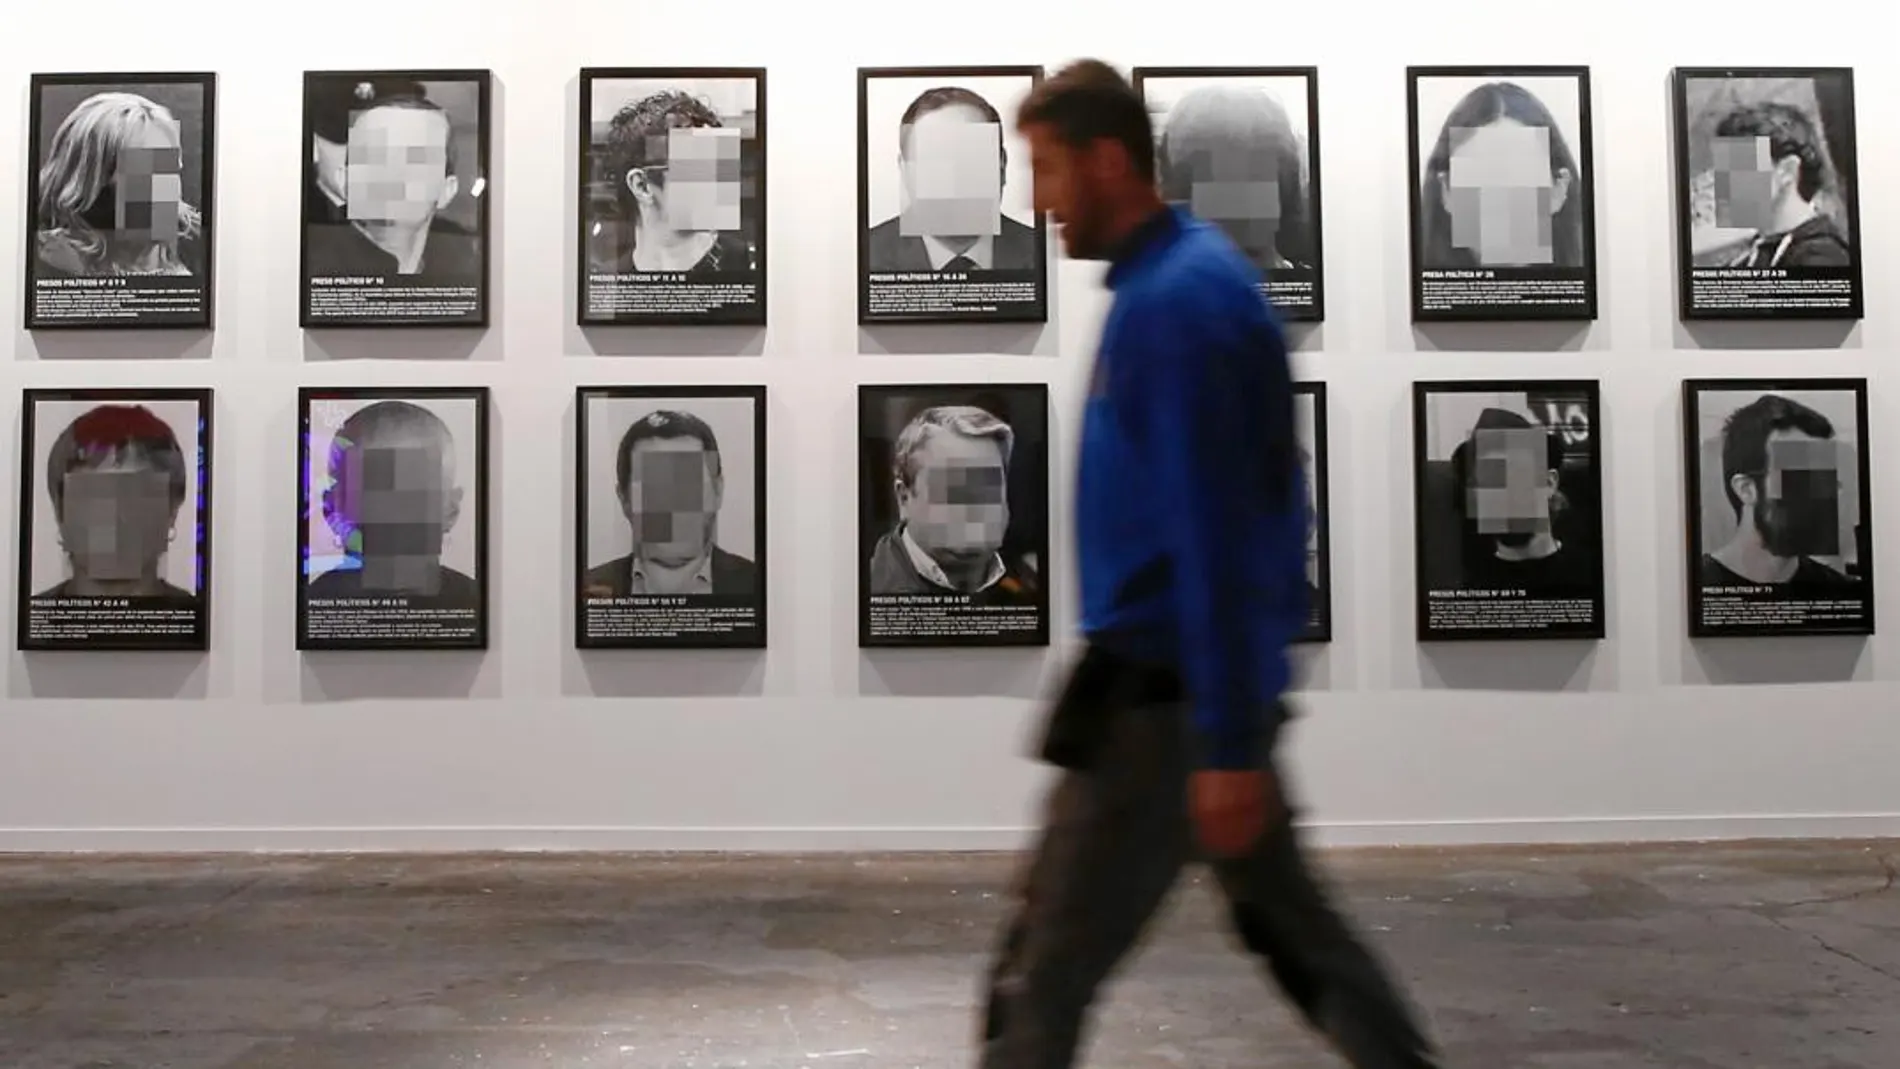 La obra cuenta con fotografías pixeladas de hasta 24 personas con una breve explicación de los motivos por los que fueron encarcelados